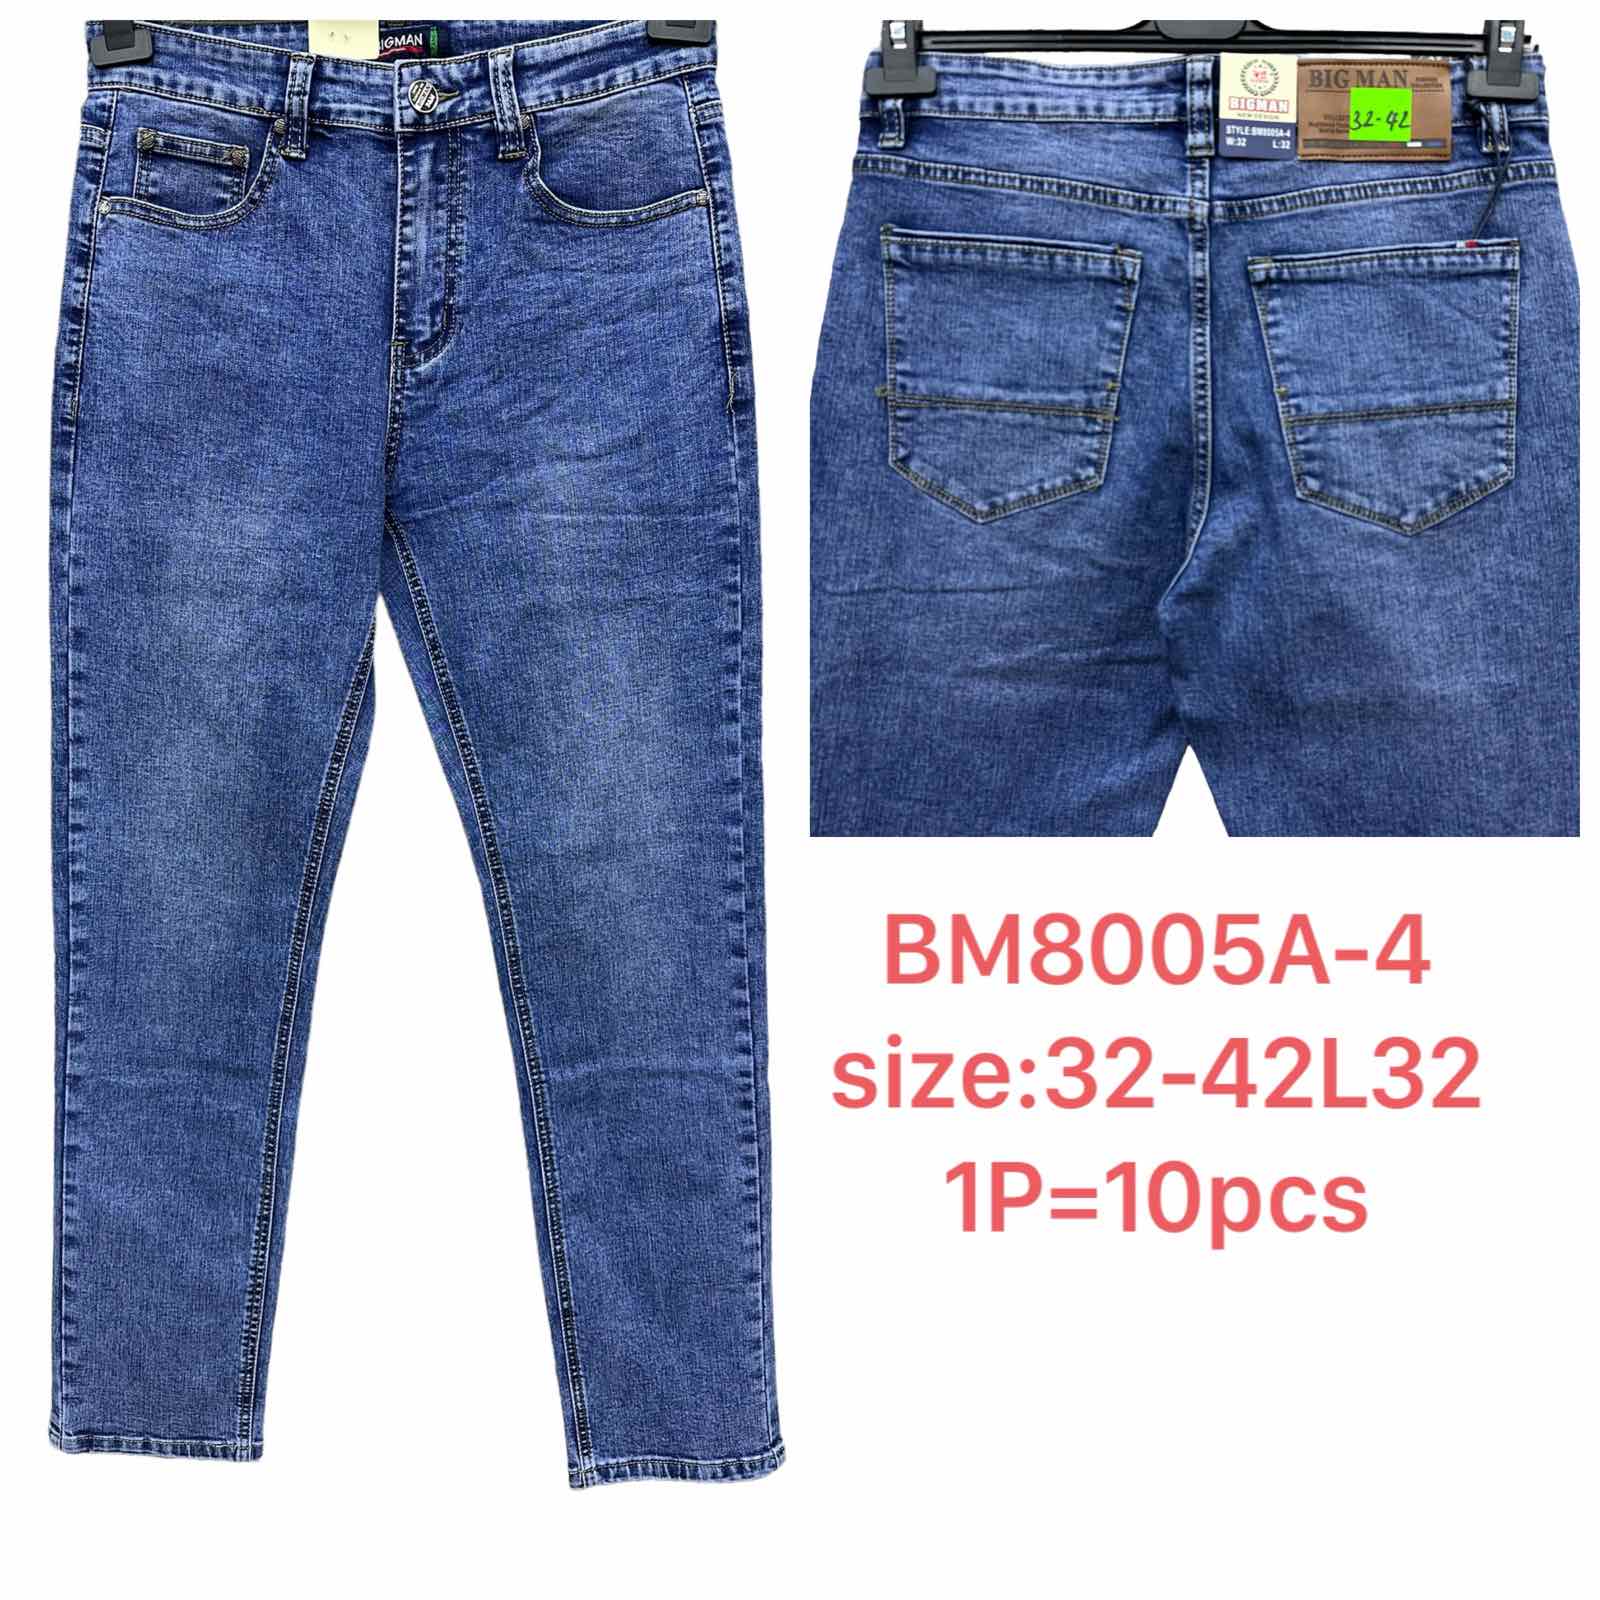 Spodnie meskie jeans  Roz 32-42 L32 Paczka 10szt